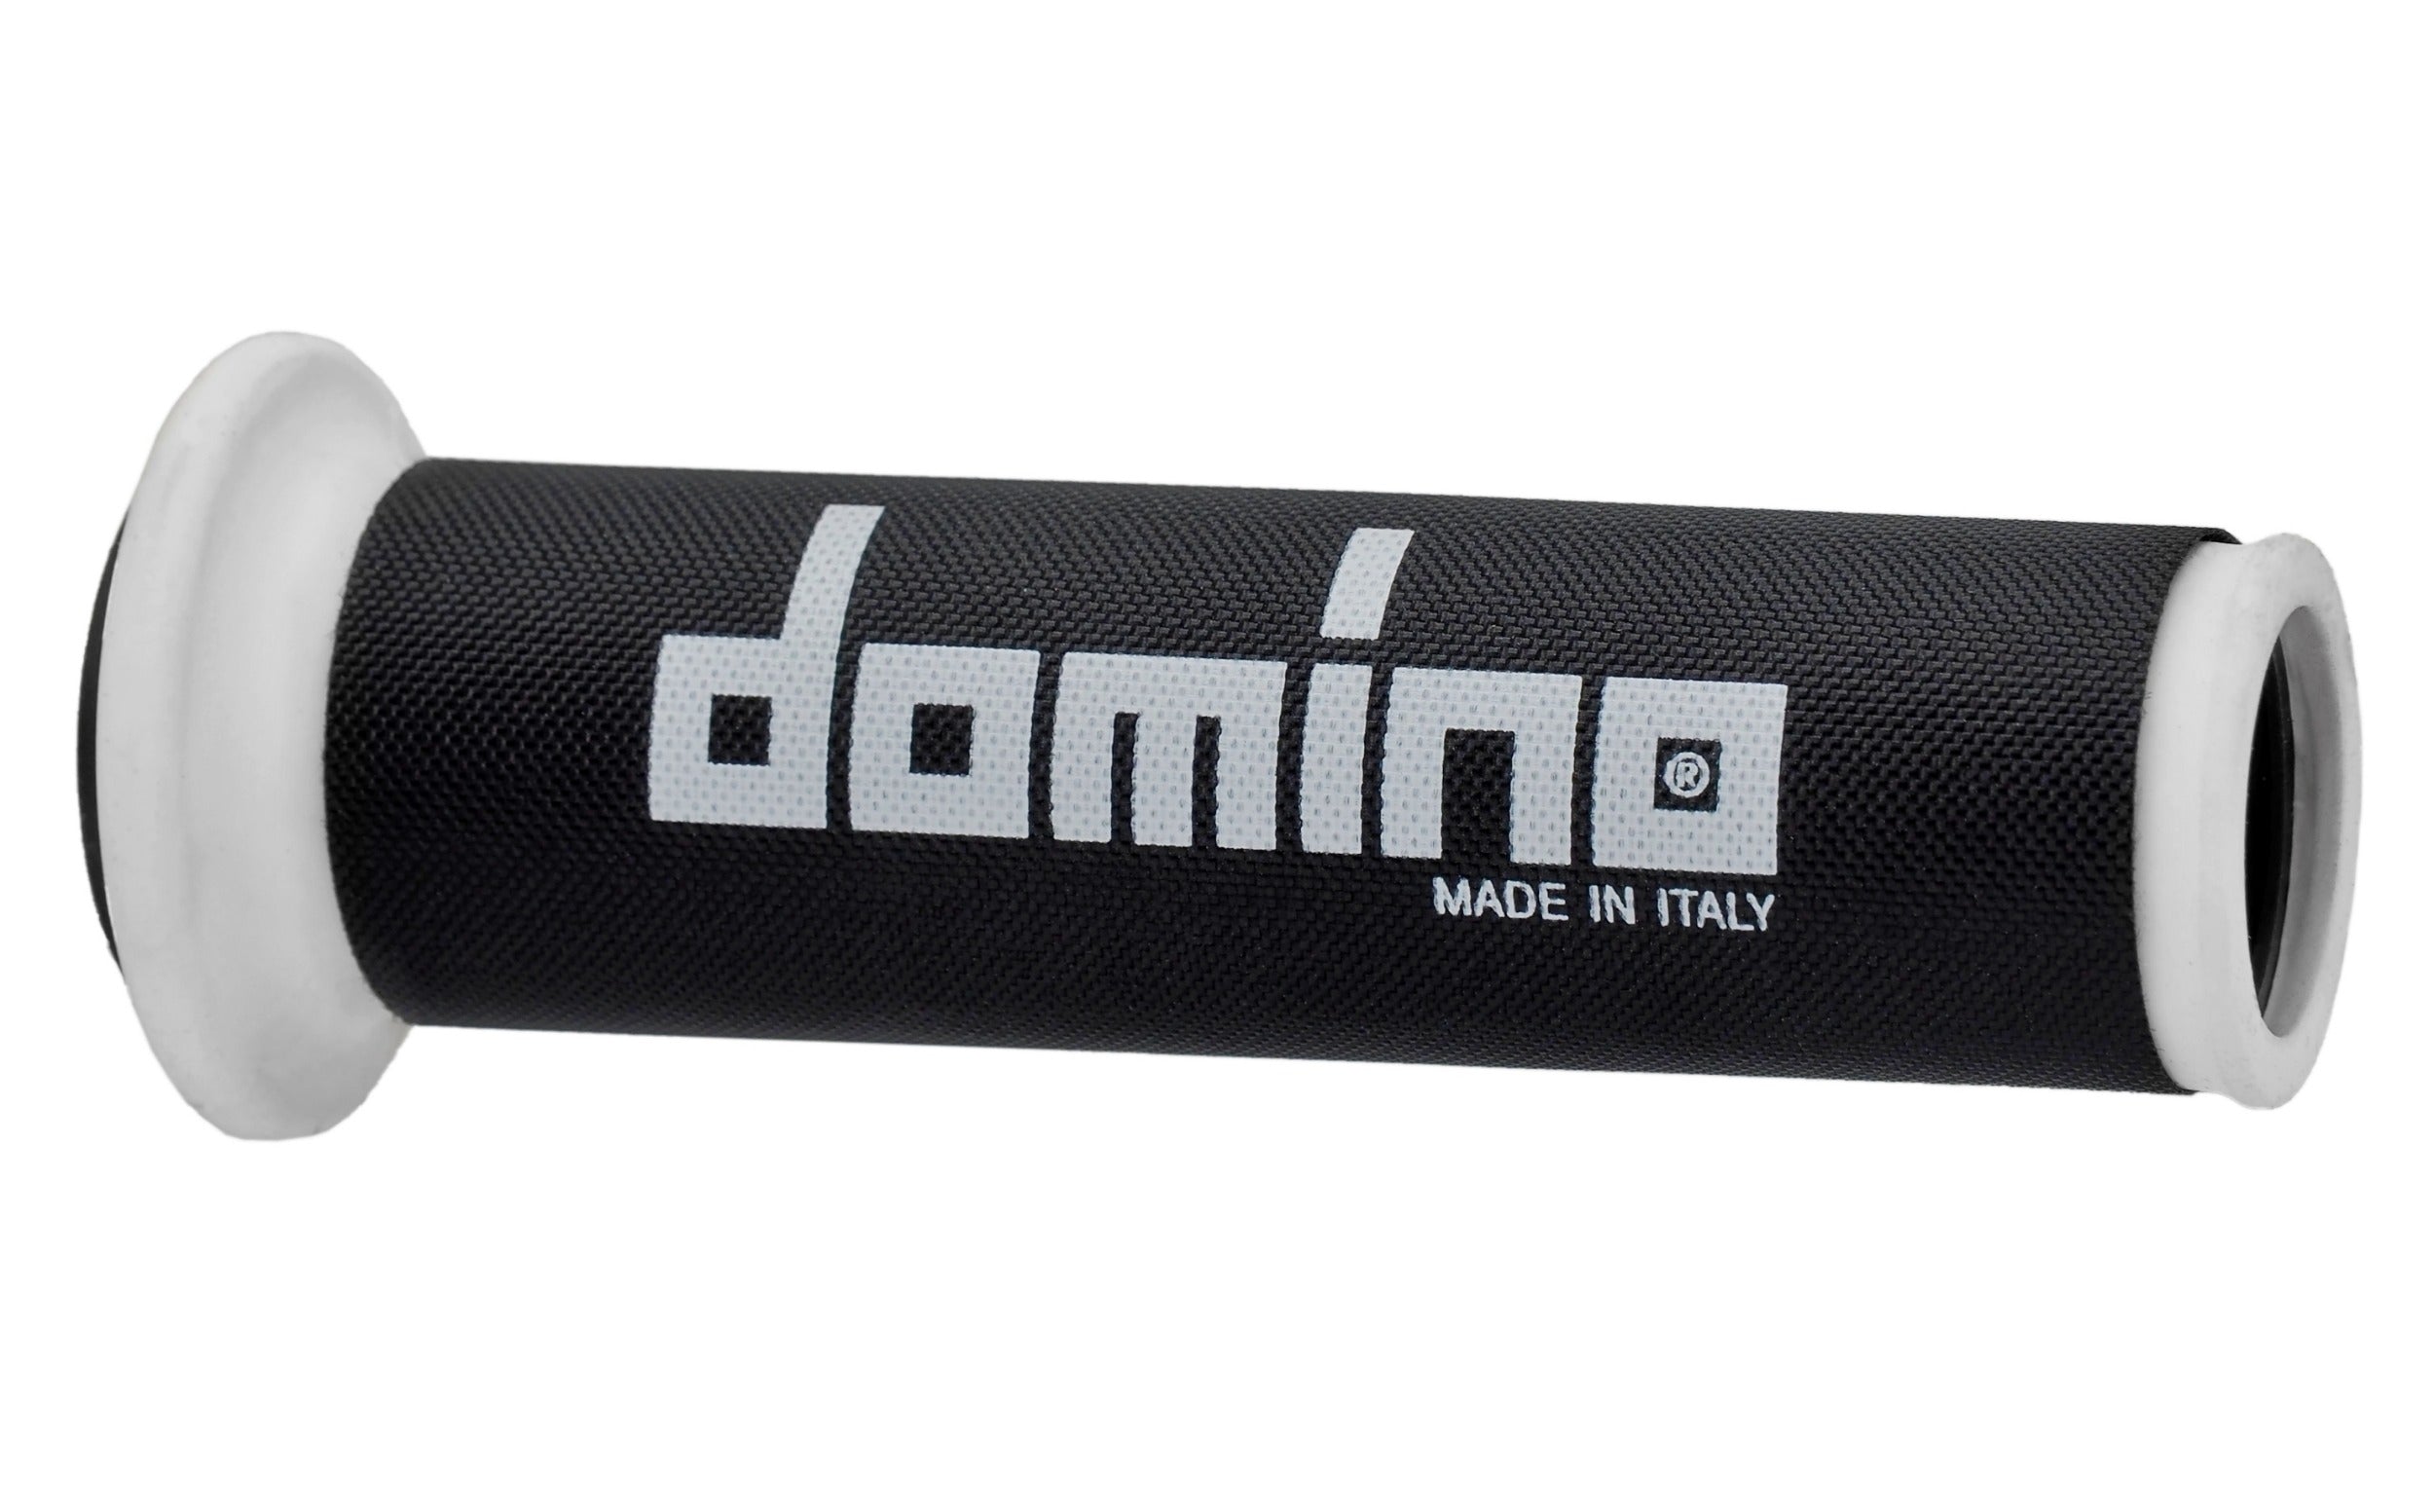 Domino Nylon Grip Covers